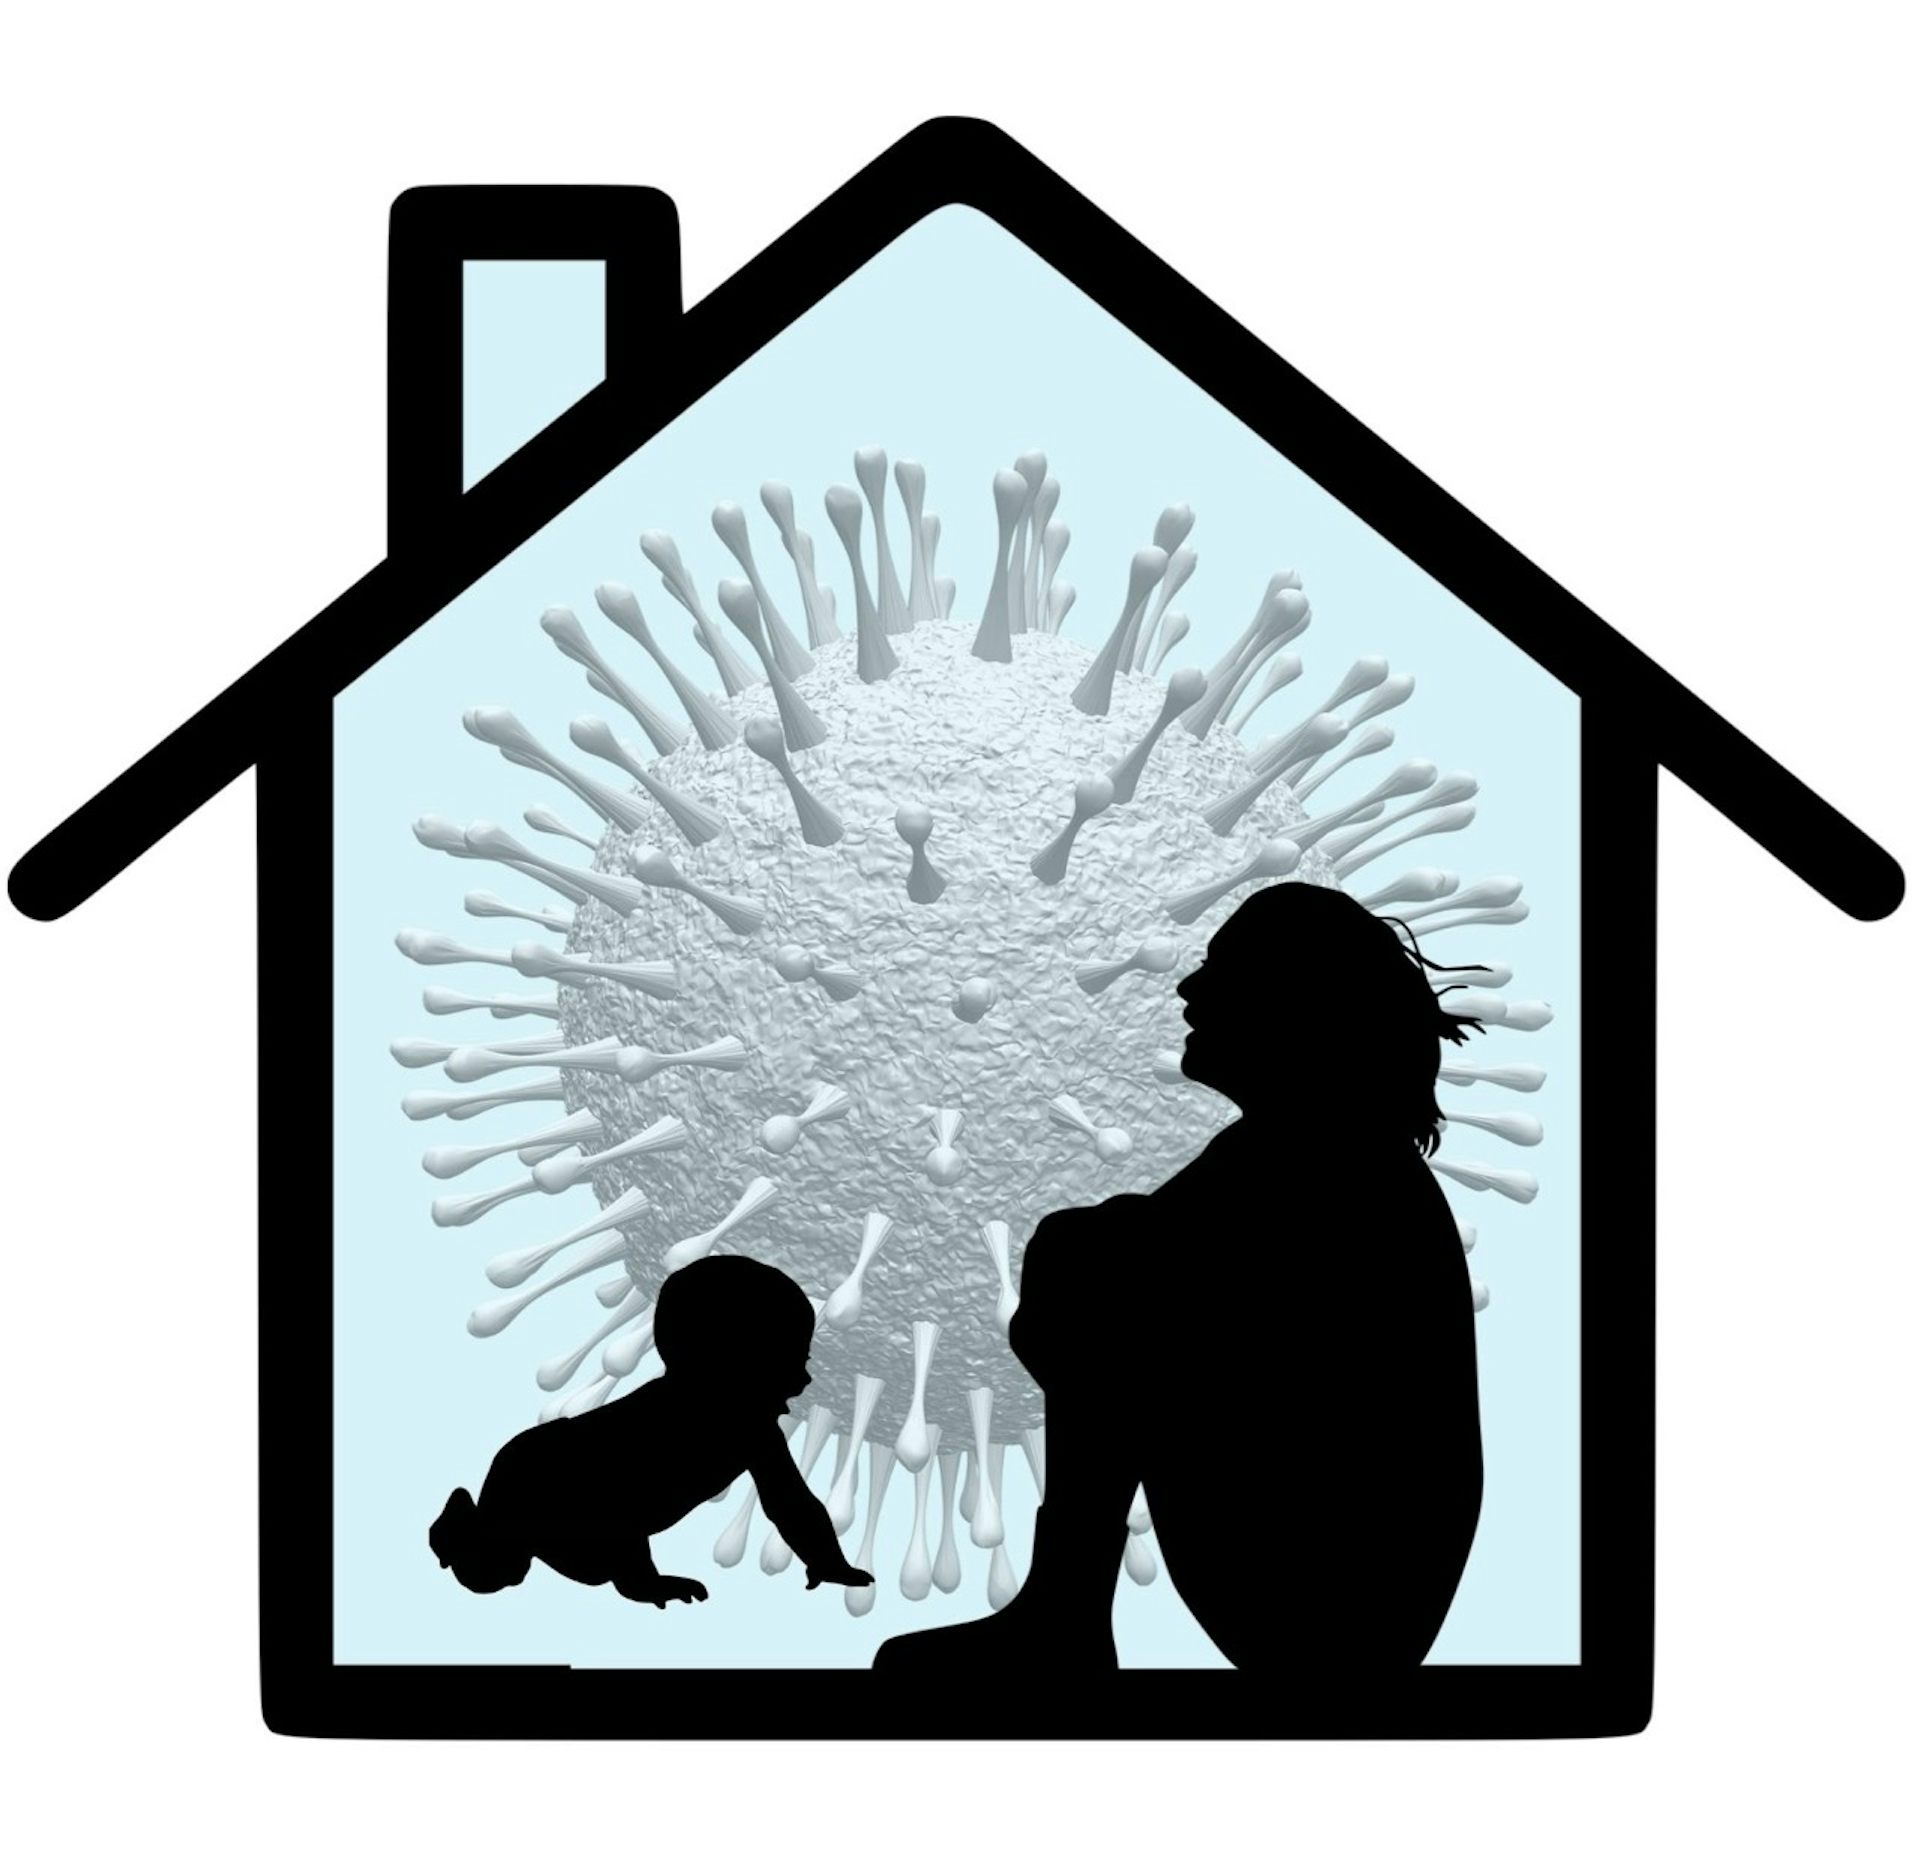 座っている女性のシルエット、膝を抱き、這う赤ちゃんの家の輪郭とコロナウイルスの画像